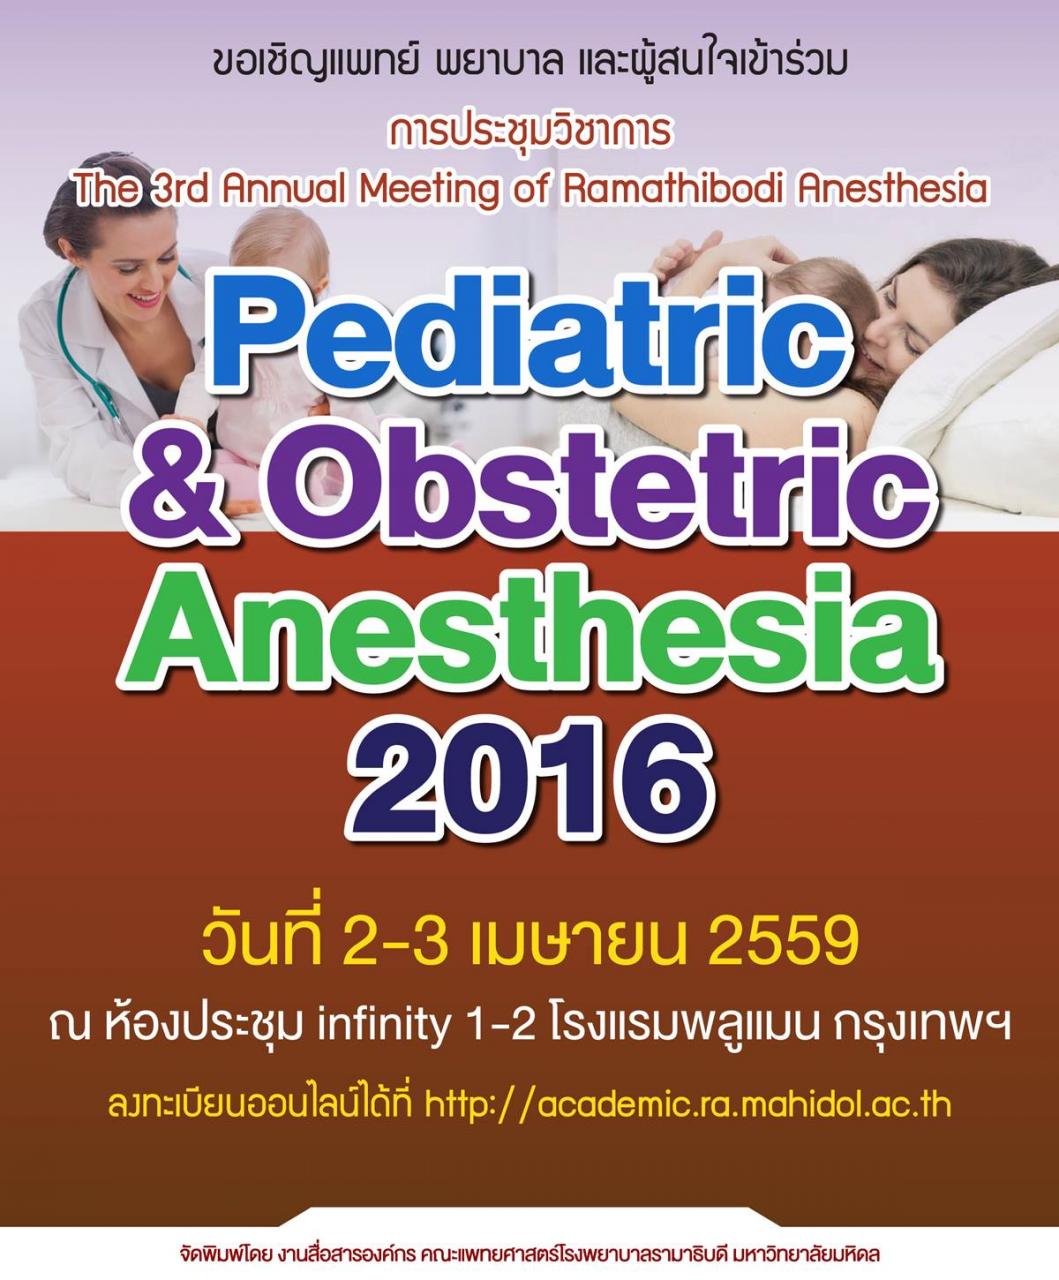 การประชุมวิชาการ The 3rd Annual Meeting of Ramathibodi Anesthesia "Pediatric & Obstertic Anesthesia 2016